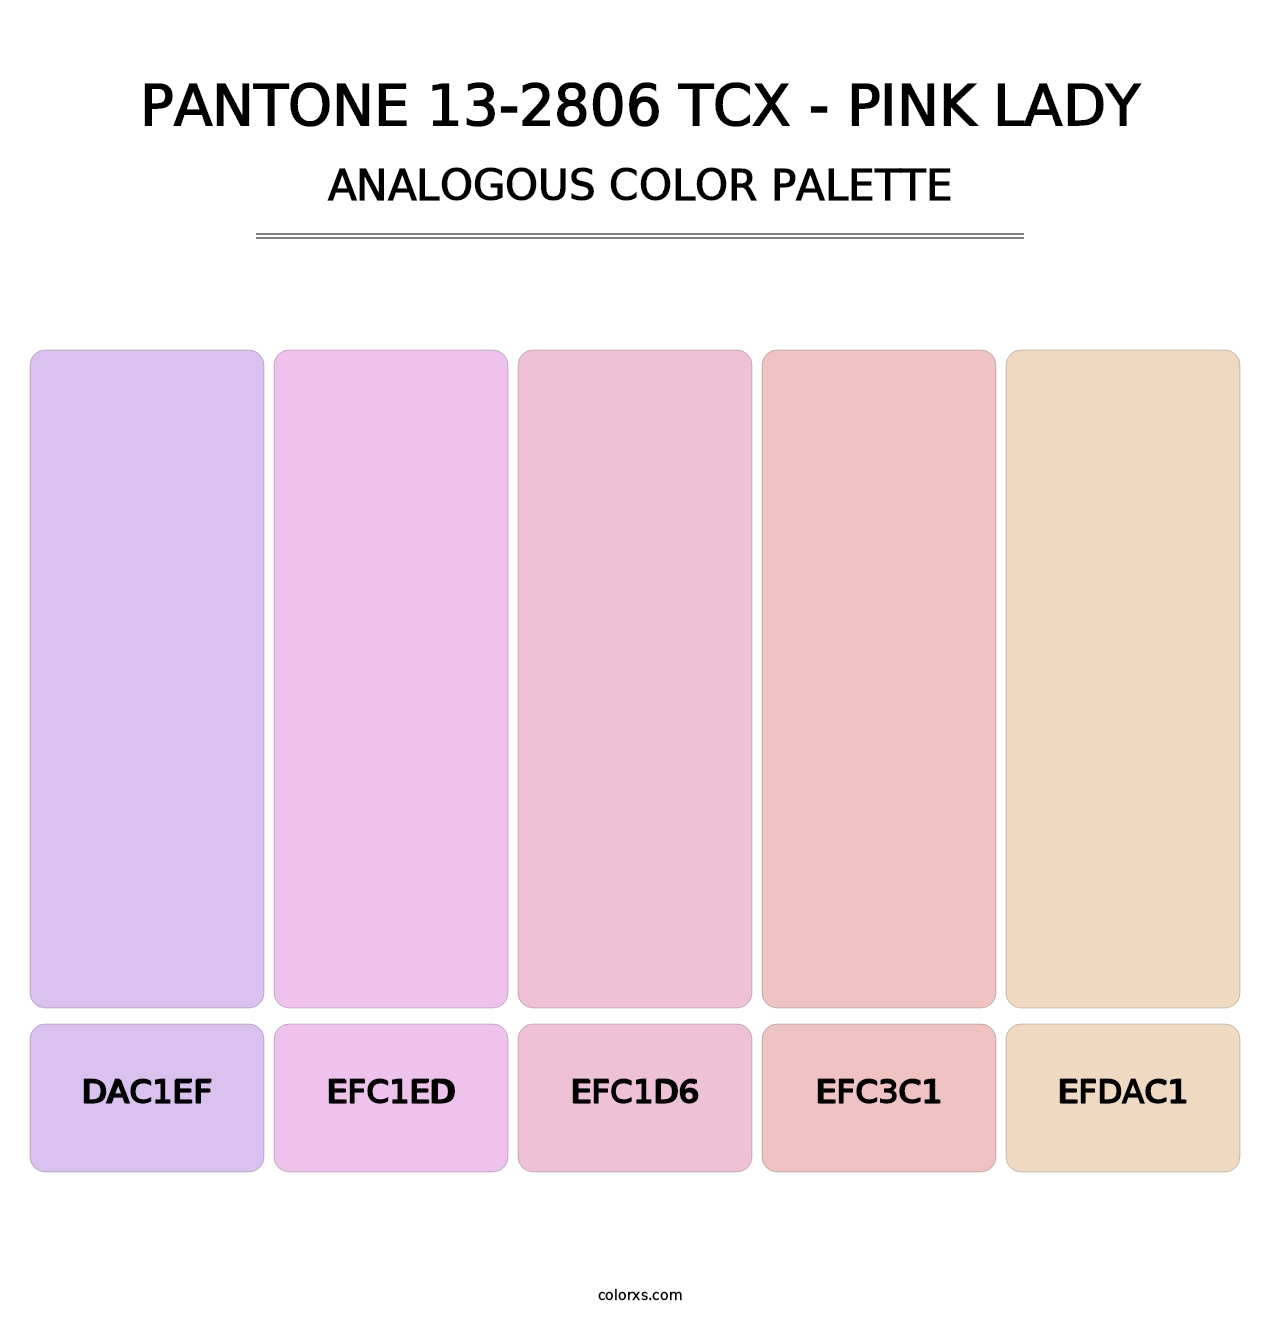 PANTONE 13-2806 TCX - Pink Lady - Analogous Color Palette